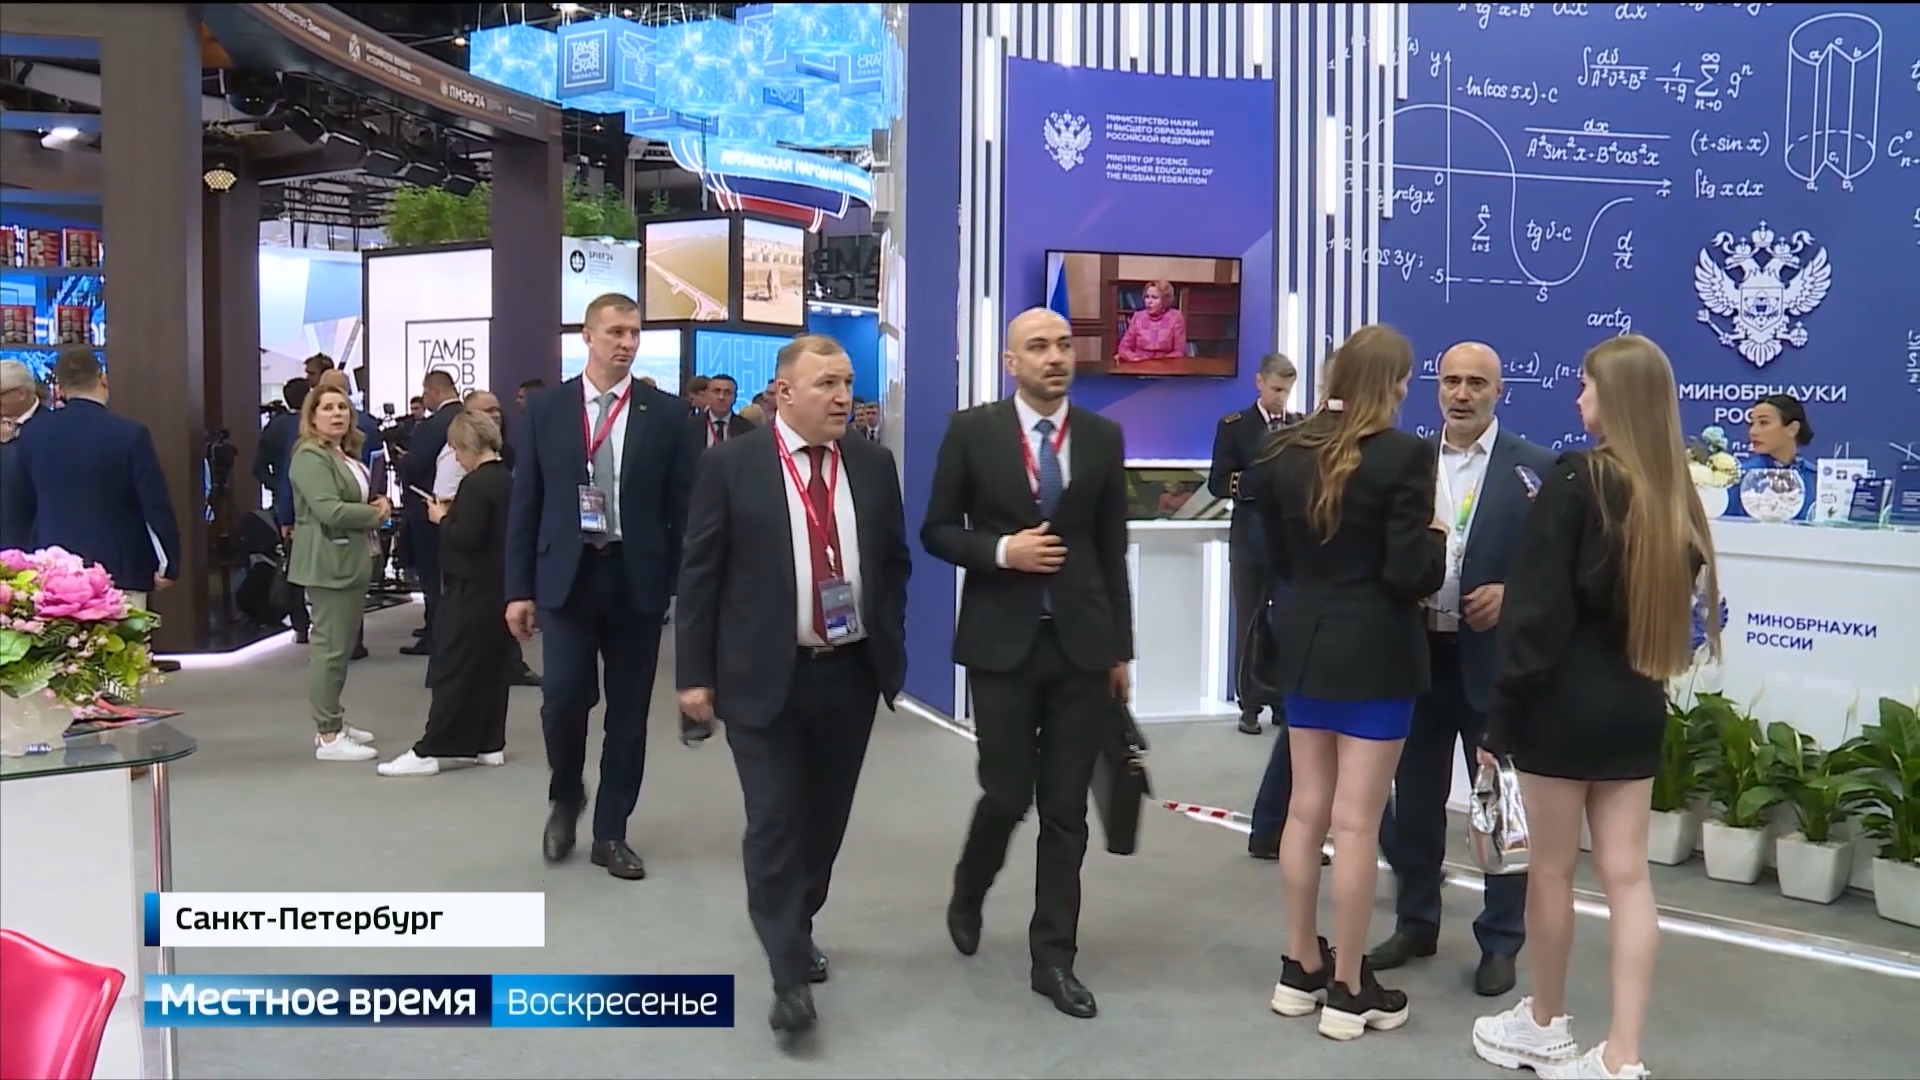 Главным событием прошедшей недели стал Петербургский международный экономический форум